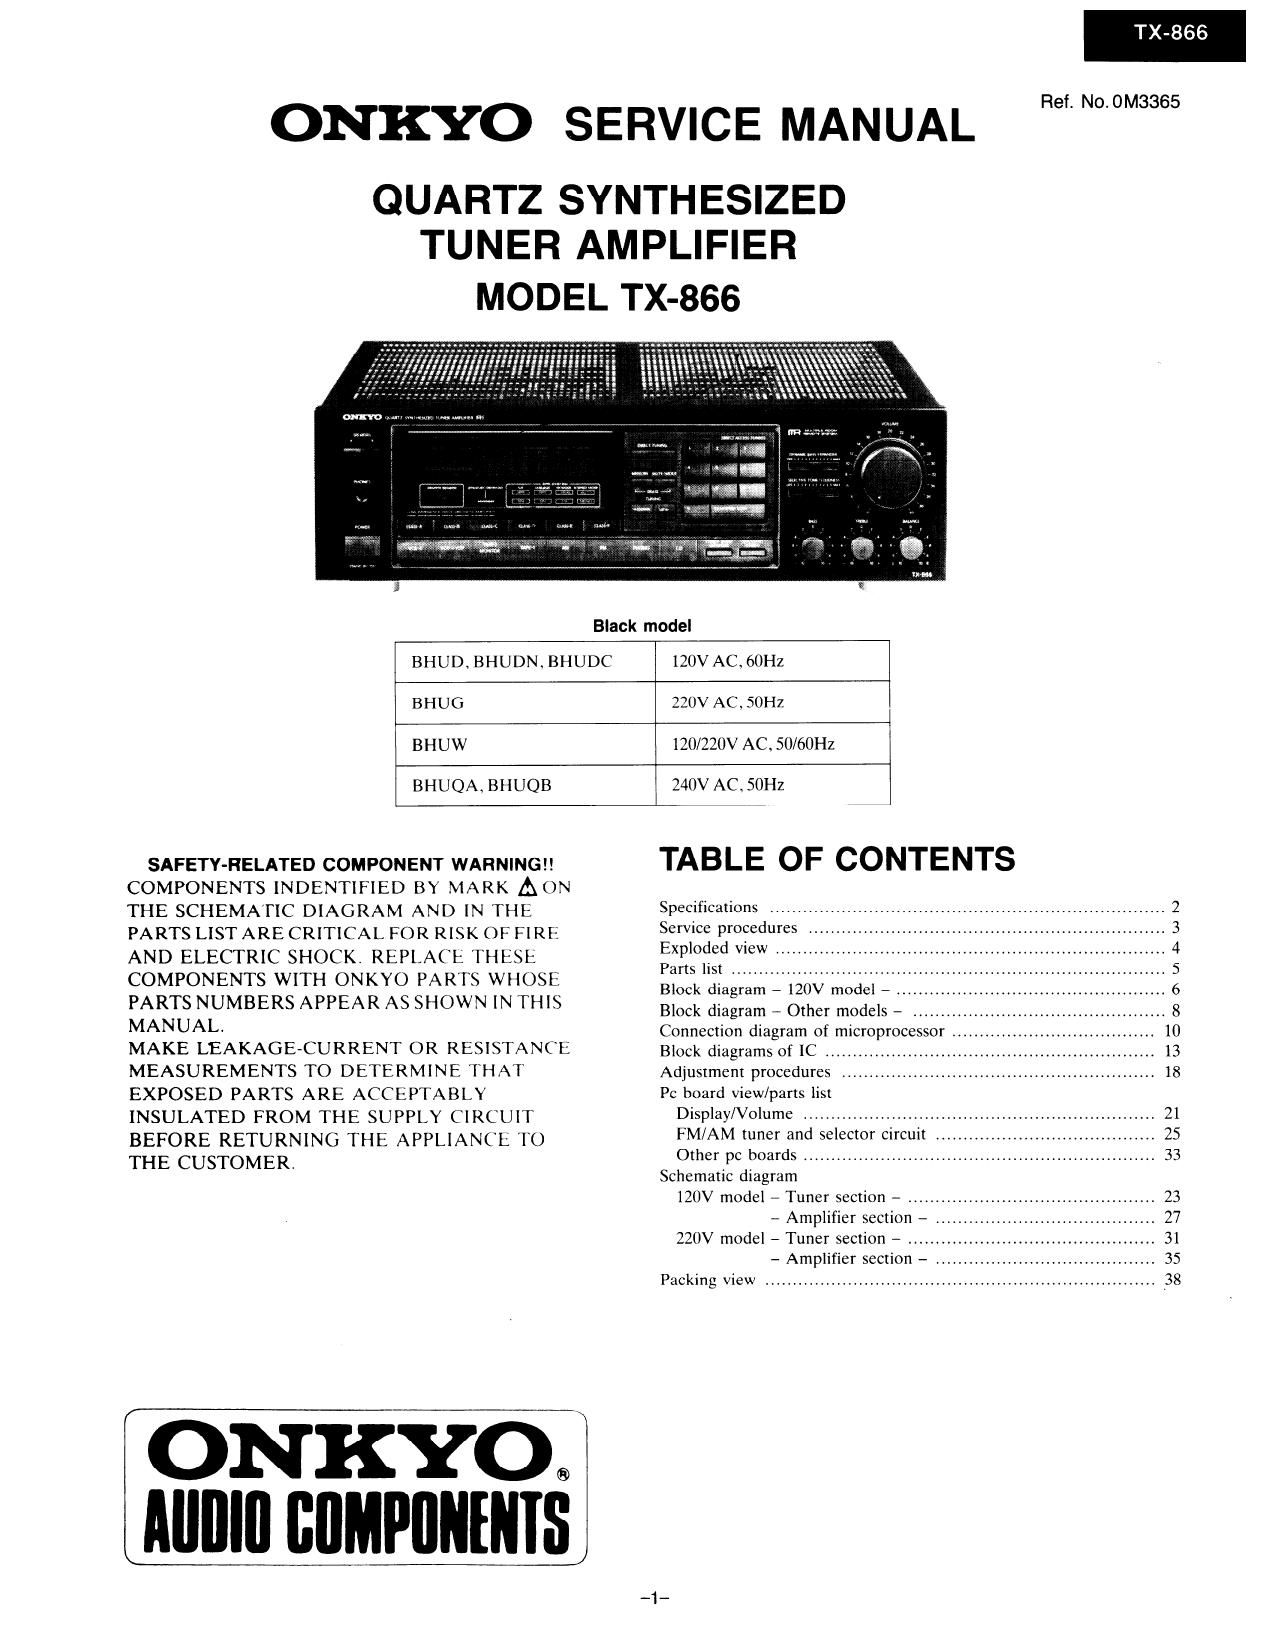 Onkyo TX 866 Service Manual